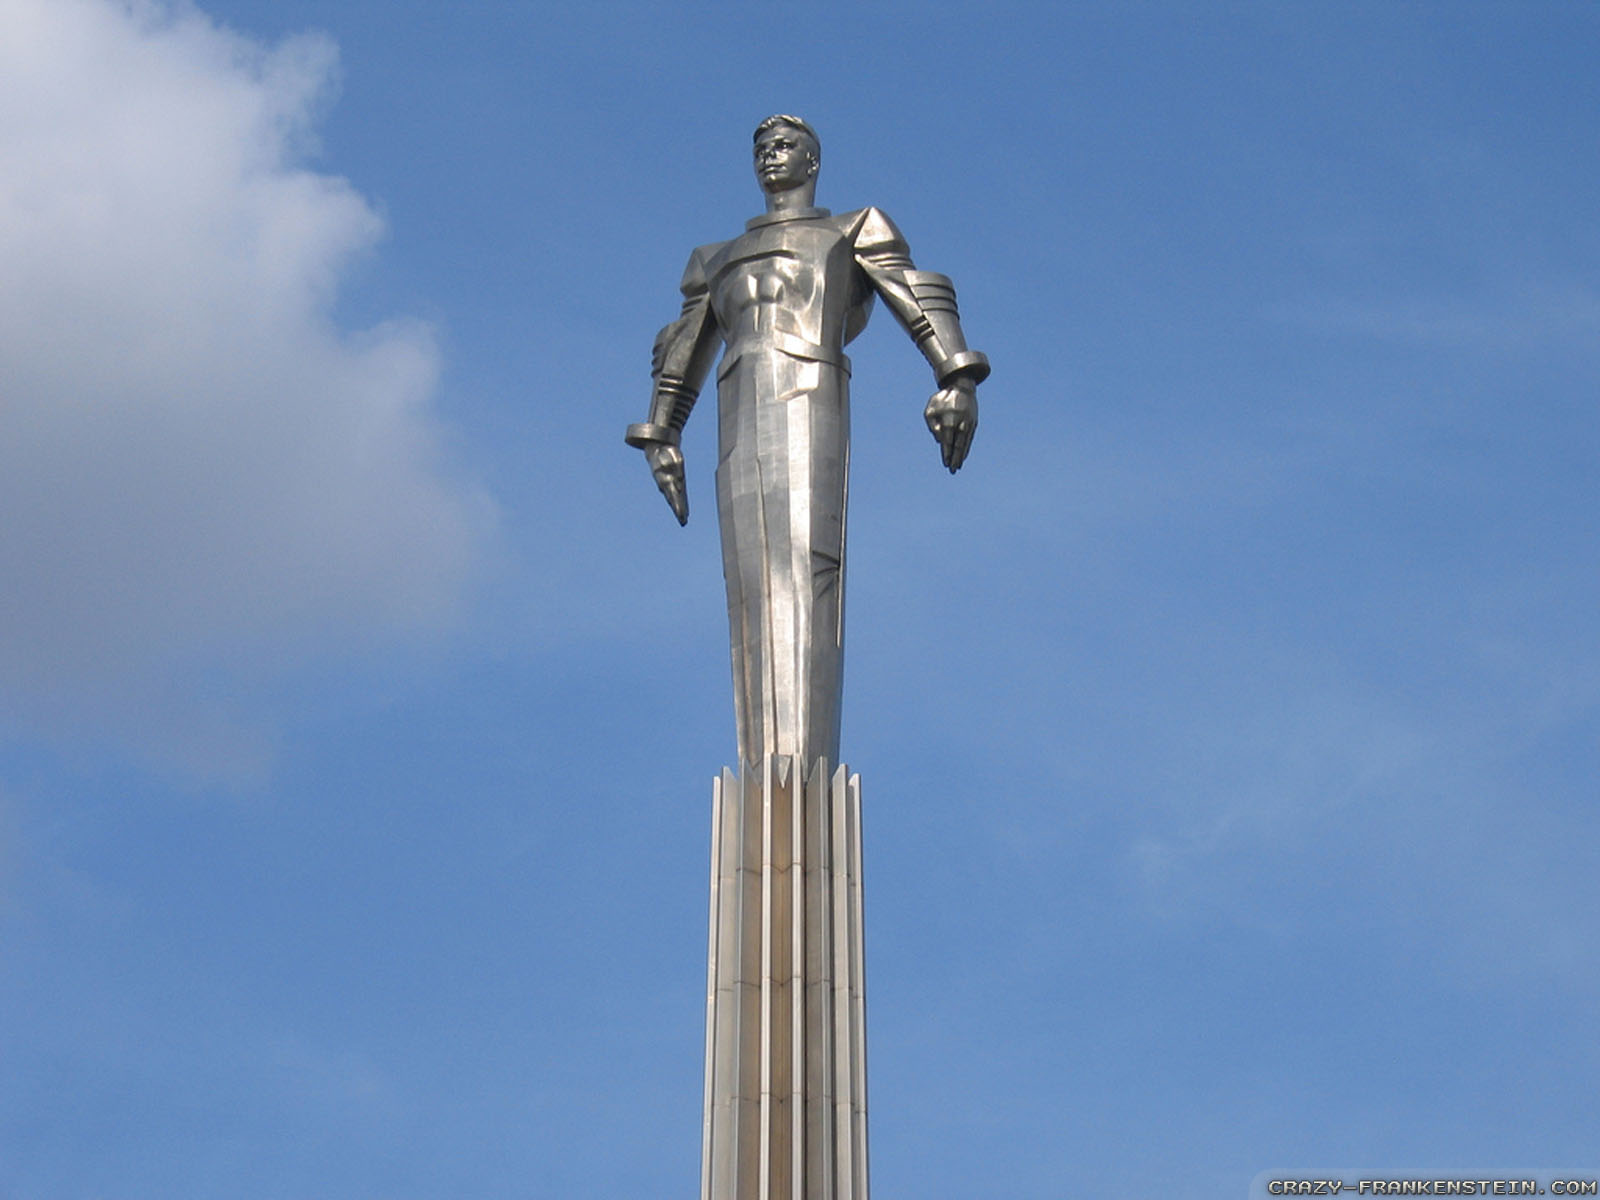 Yuri Gagarin Statue Wallpaper Crazy Frankenstein